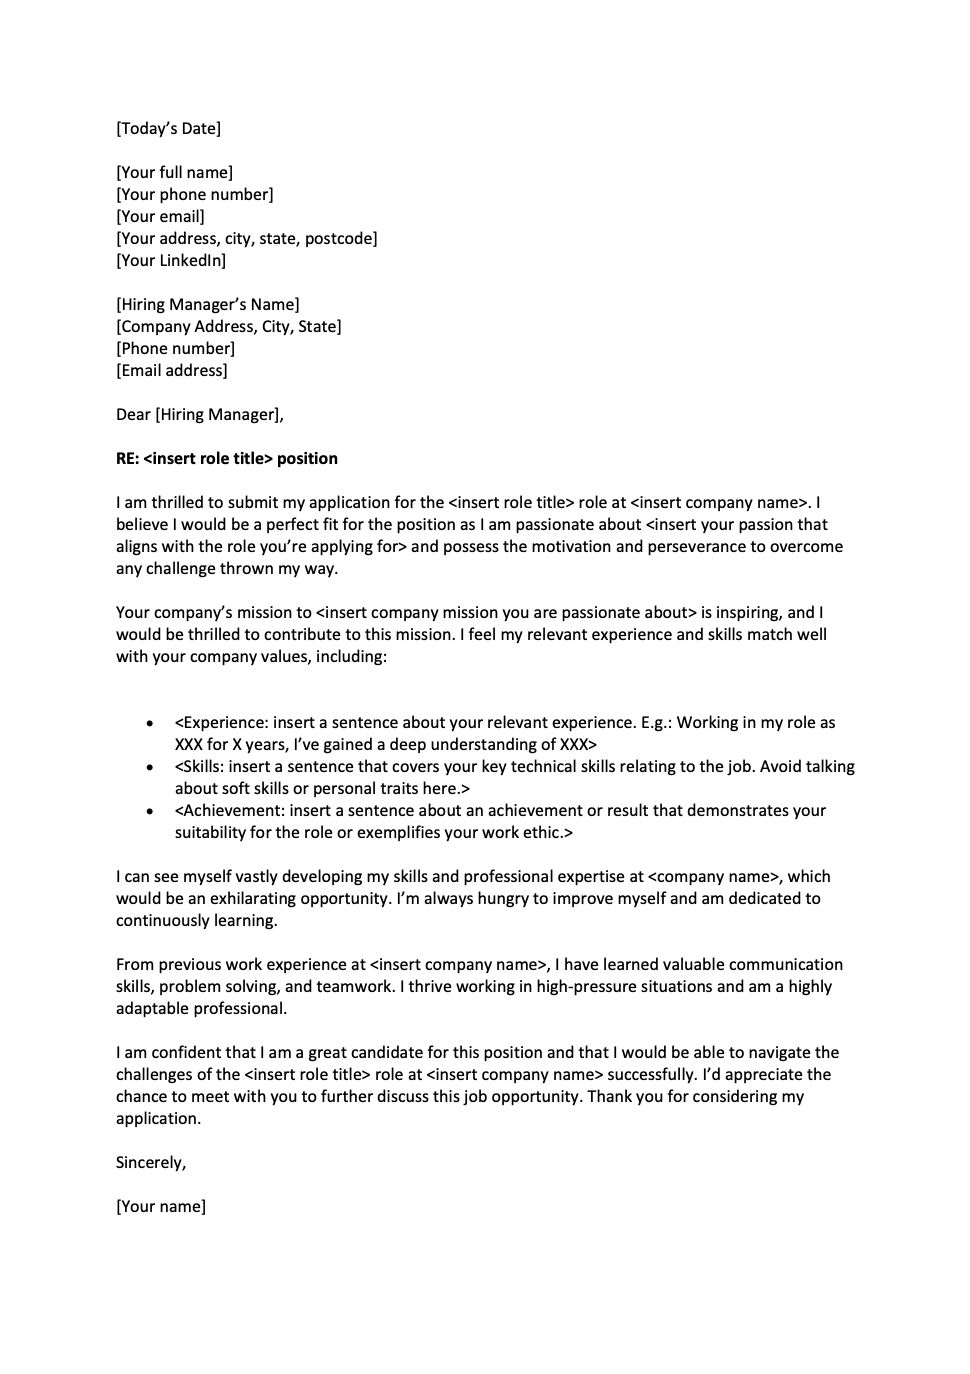 cover letter for job application in australia